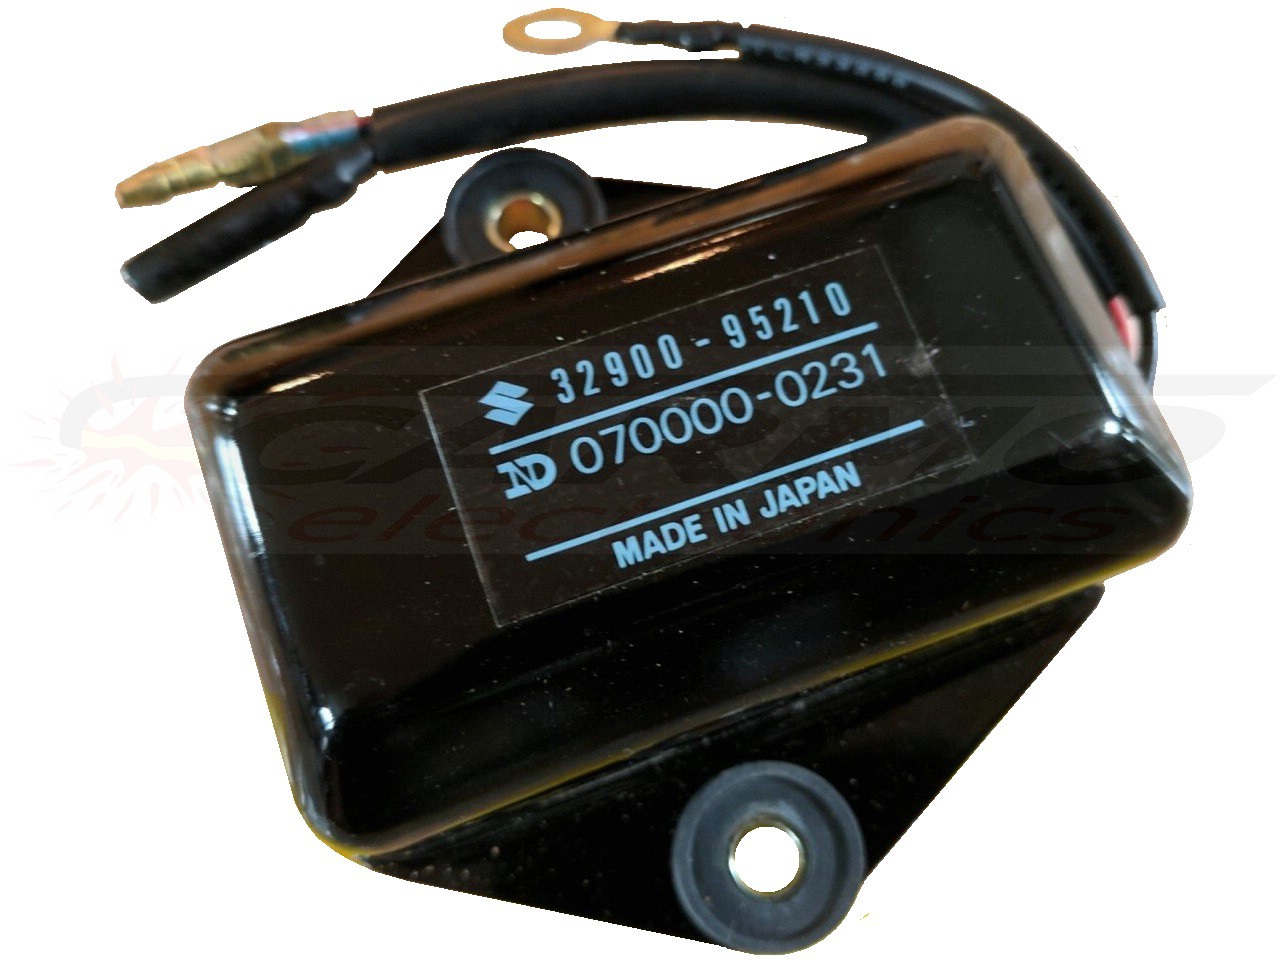 DT20 - DT65 TCI CDI dispositif de commande boîte noire (32900-95210, 070000-0231)